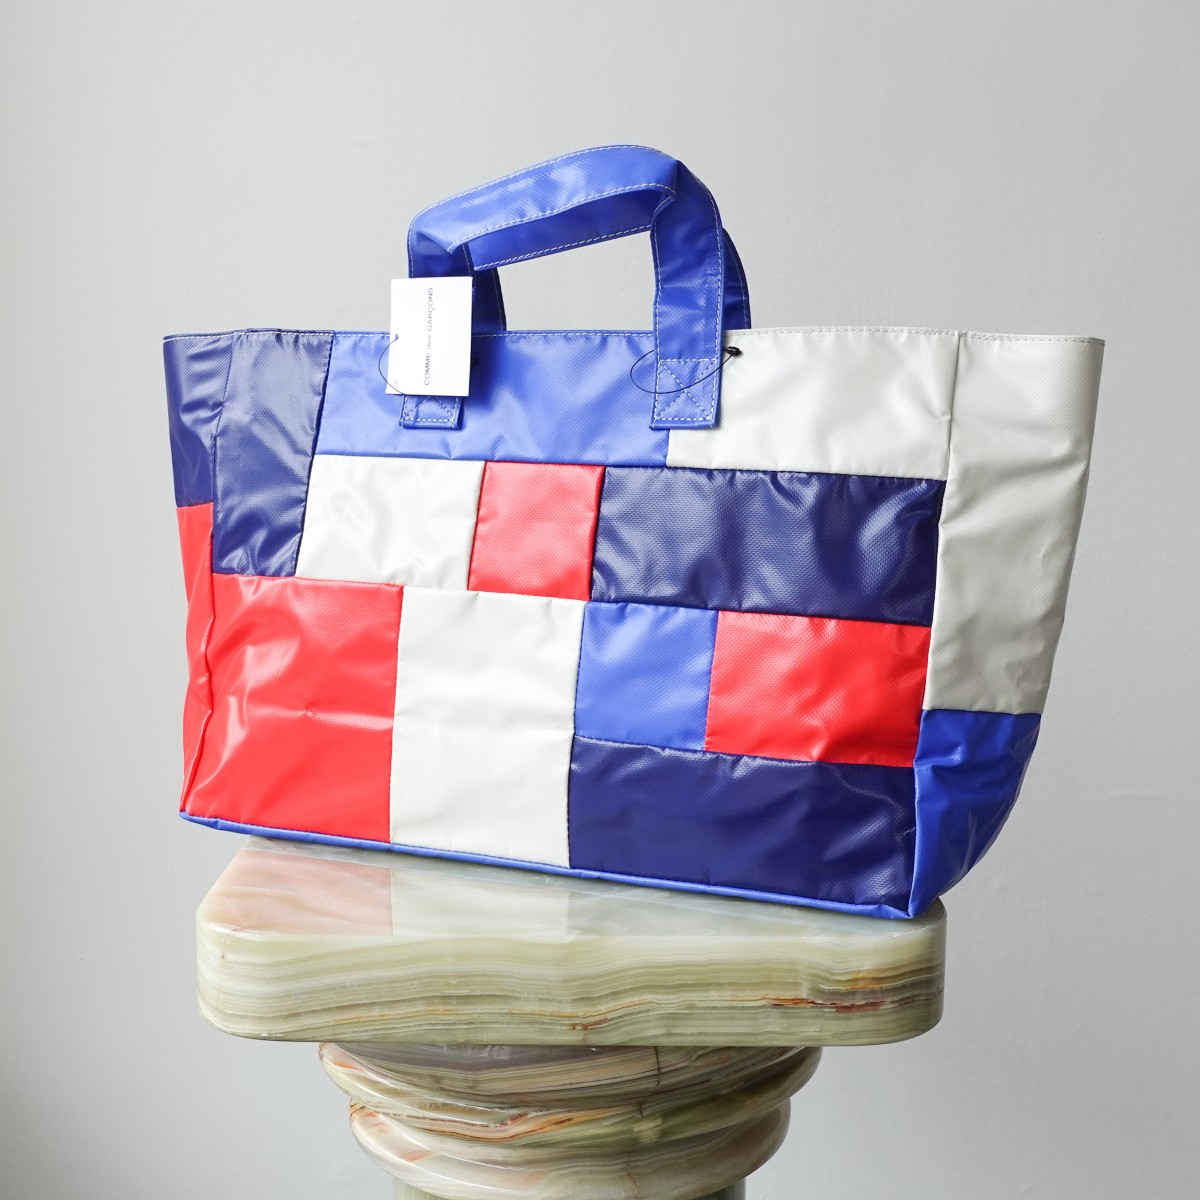 Villette MM Tote Bag – Markat store